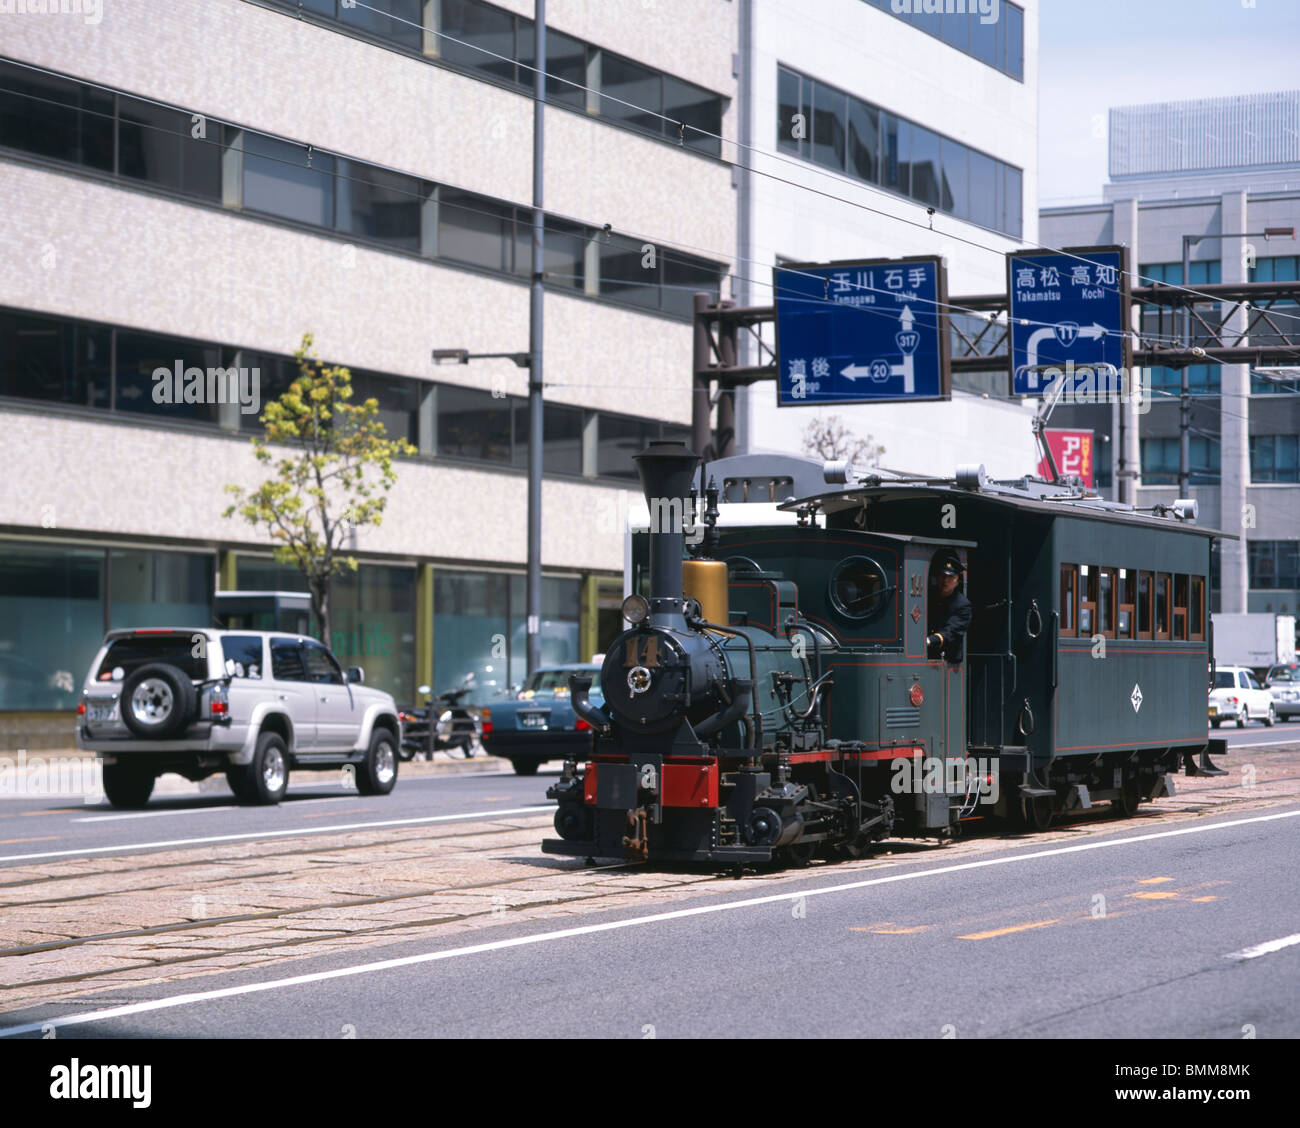 Botchan, Train à vapeur de la ville de Matsuyama, Japon Banque D'Images